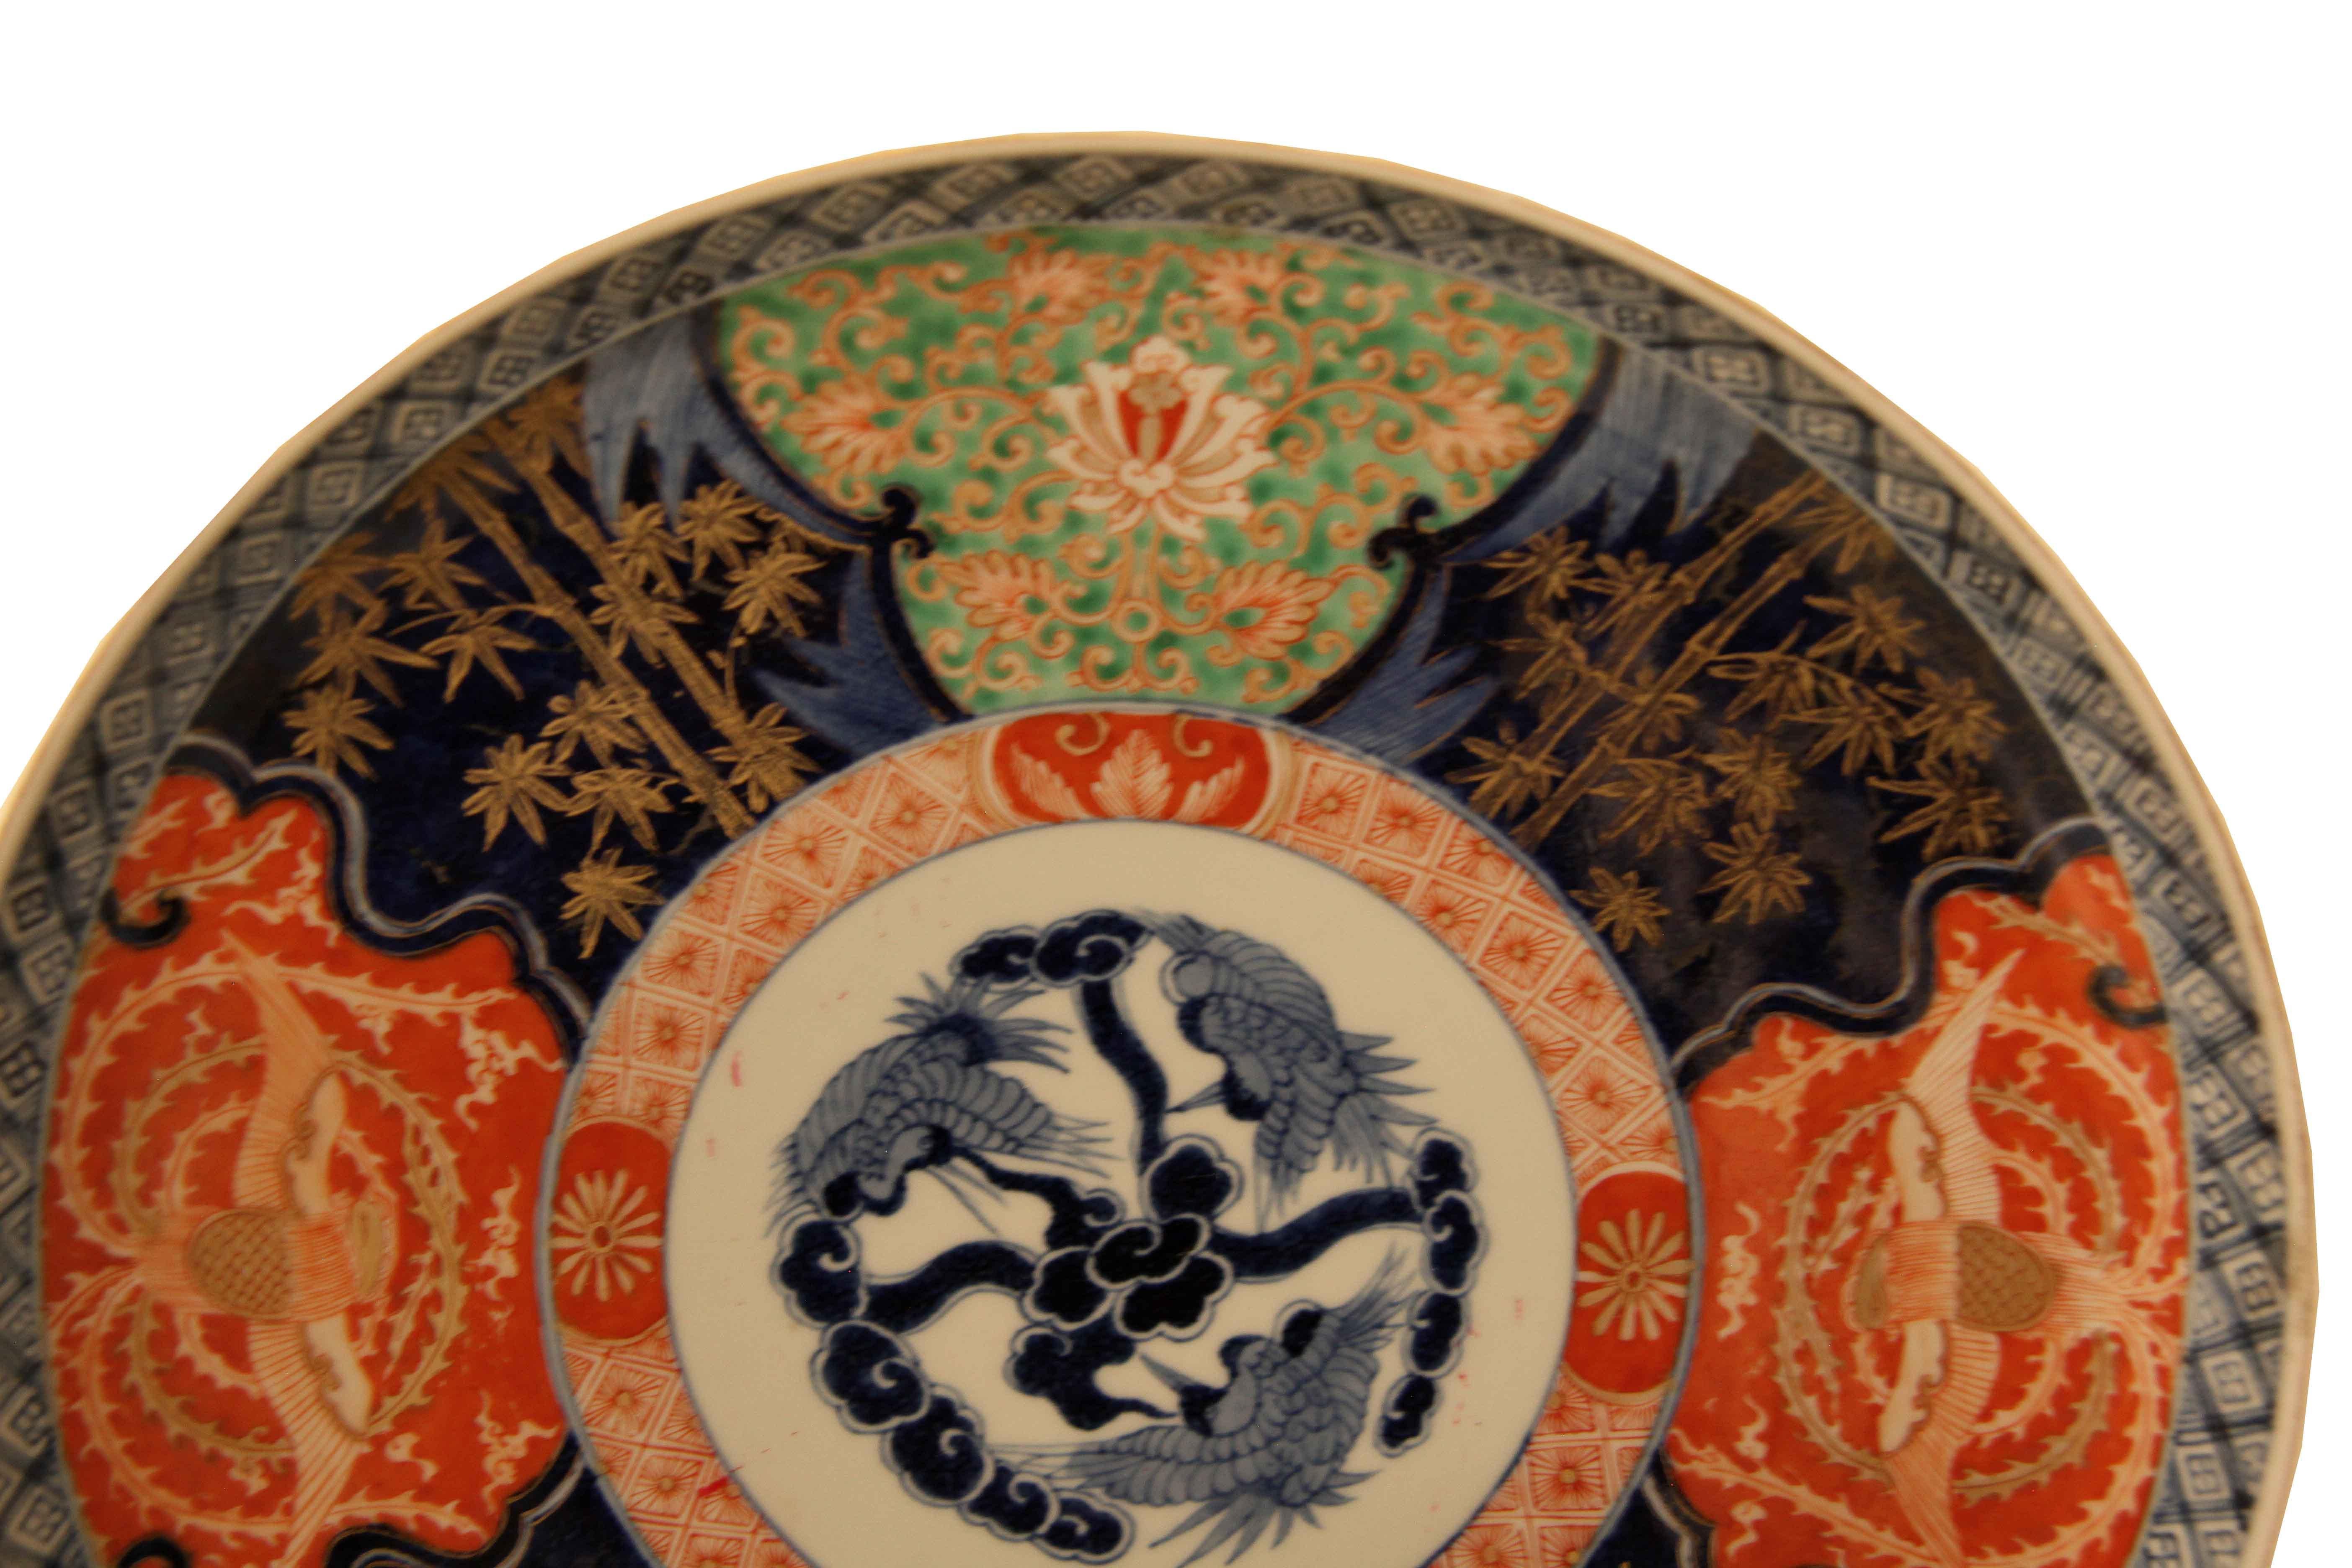 Paar japanische Imari-Werbegeschenke, die äußere Umrandung besteht aus einer schmalen Kreuzschraffur aus blauen und weißen Linien;  Die innere Bordüre besteht aus abwechselnden Kartuschen mit Vögeln, Blumen und Bambus in typischen Imari-Farben; in